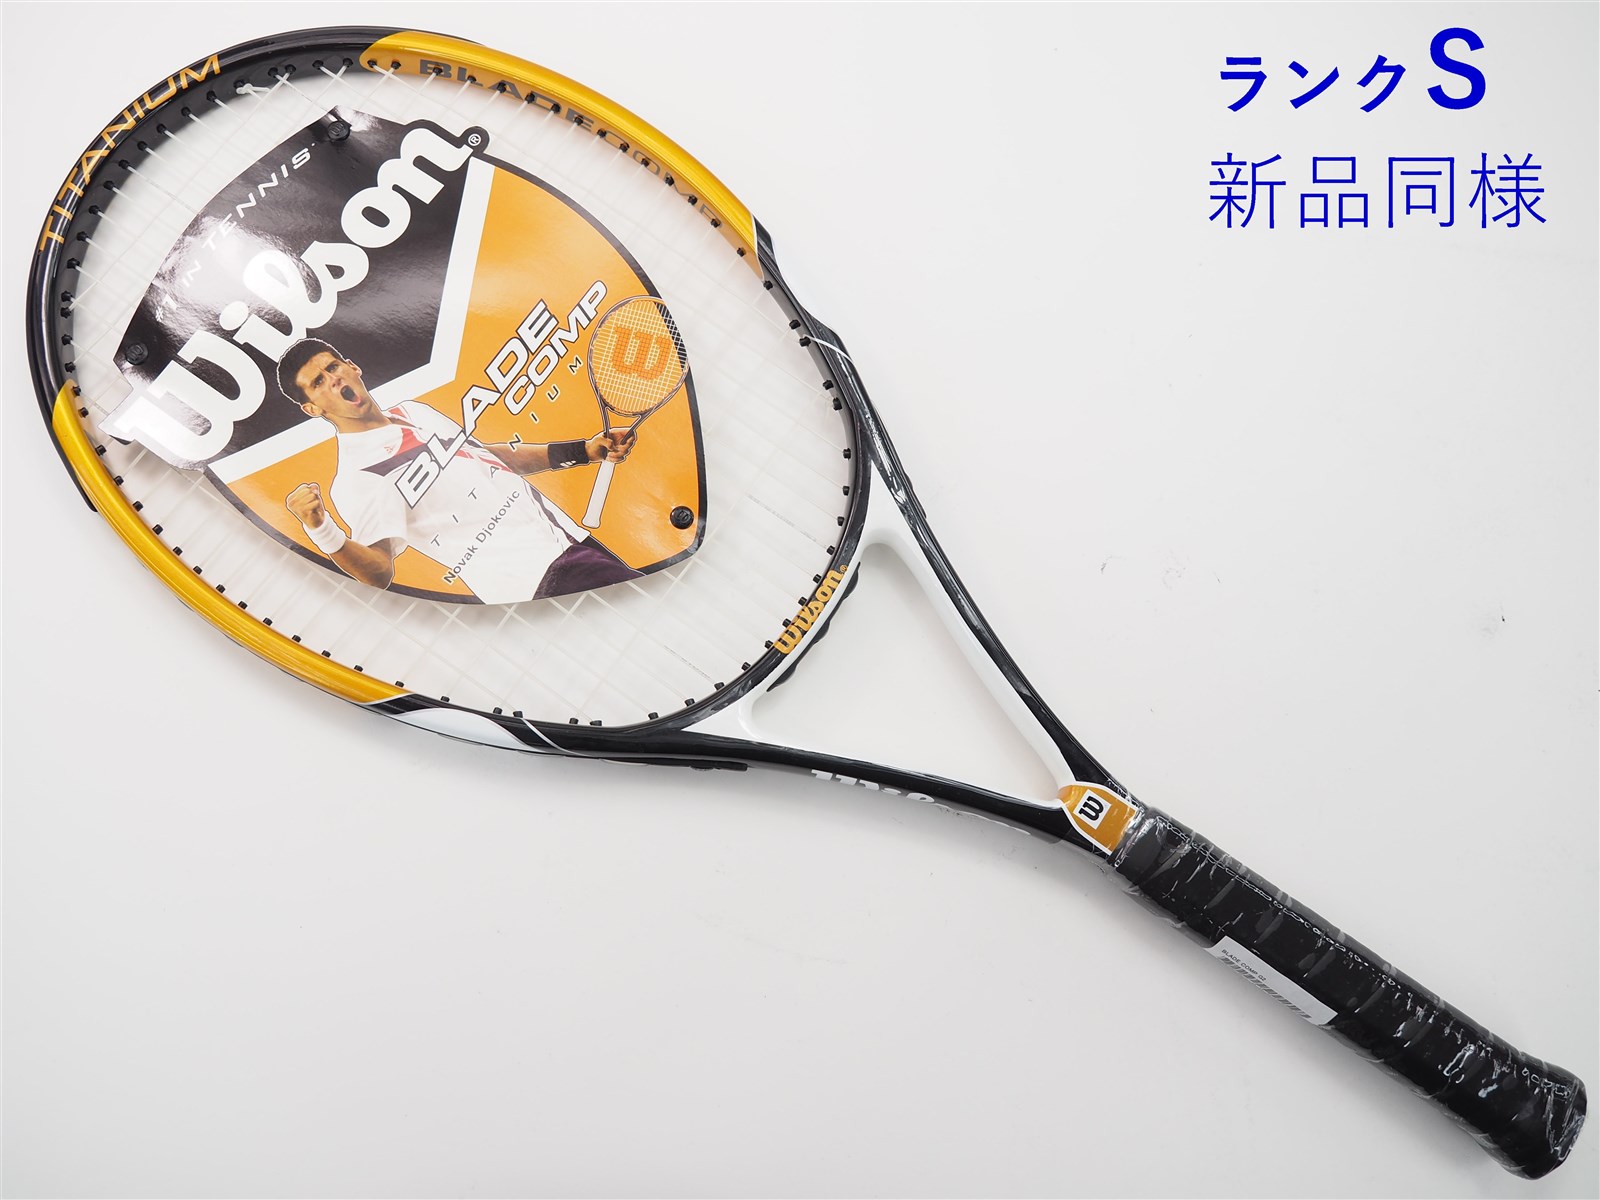 中古】ウィルソン ブレイド コンプWILSON BLADE COMP(G2)【中古 テニス 